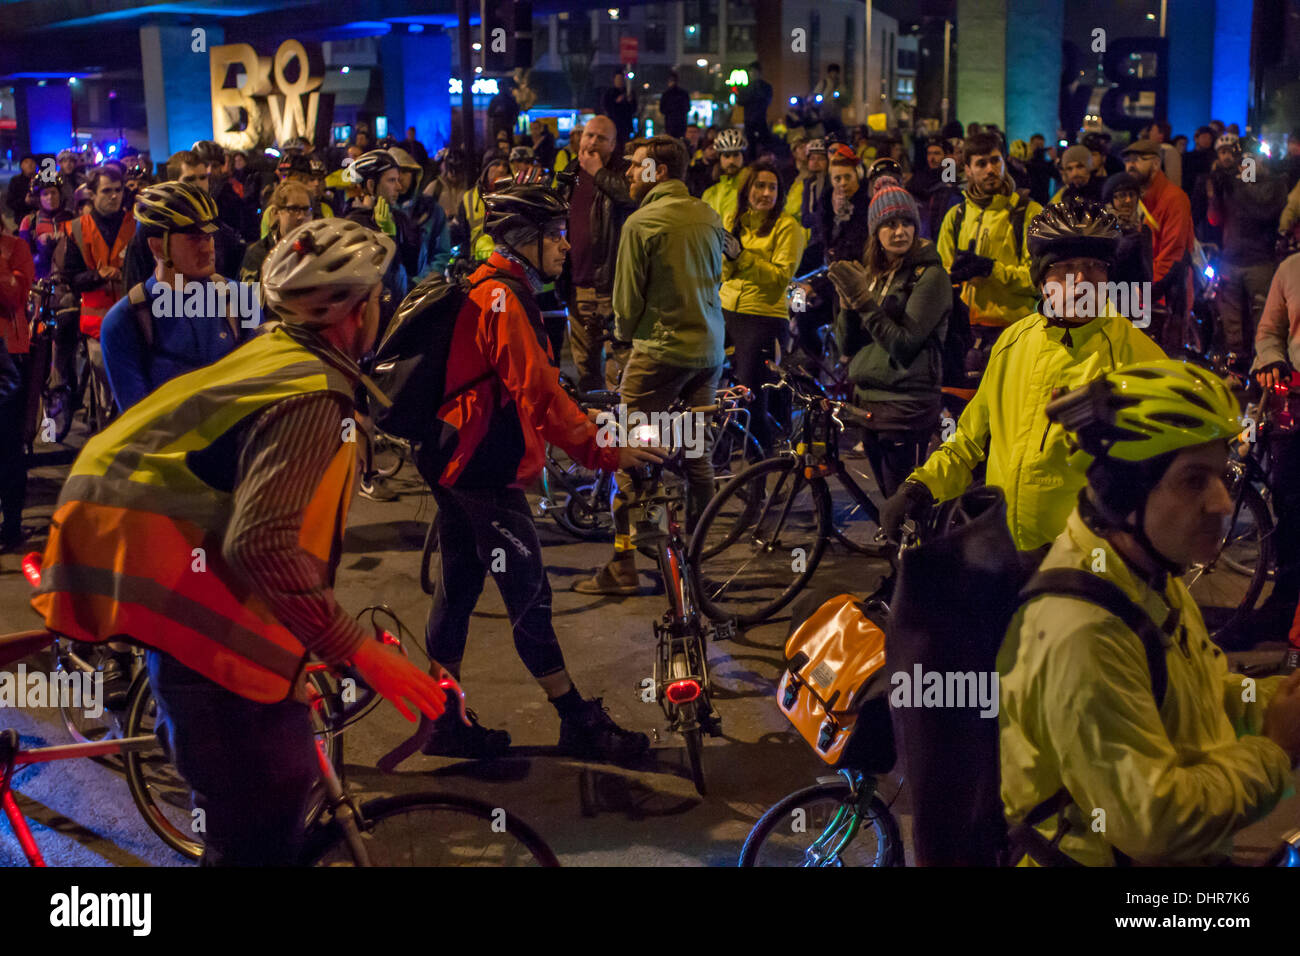 Londres, Reino Unido. 13 de noviembre de 2013. 1000 ciclistas se reúnen en la rotonda de proa, Londres, para protestar 4 muertes en 8 días de Crédito: © Zefrog/Alamy Live News Foto de stock